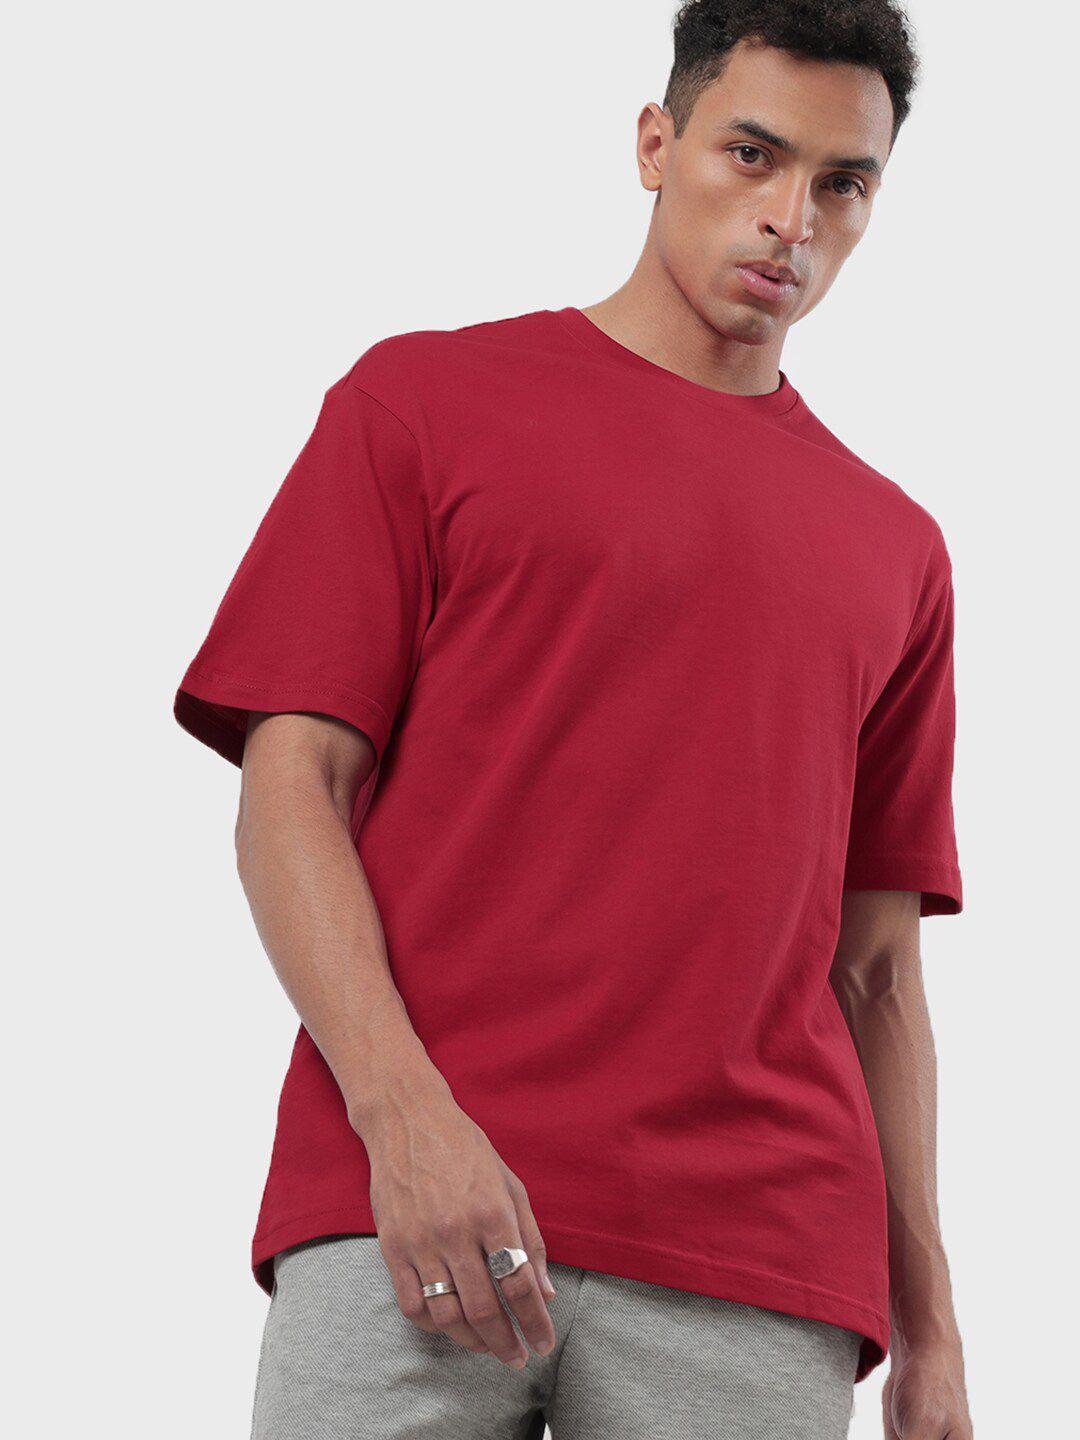 bewakoof-men-red-oversized-t-shirt